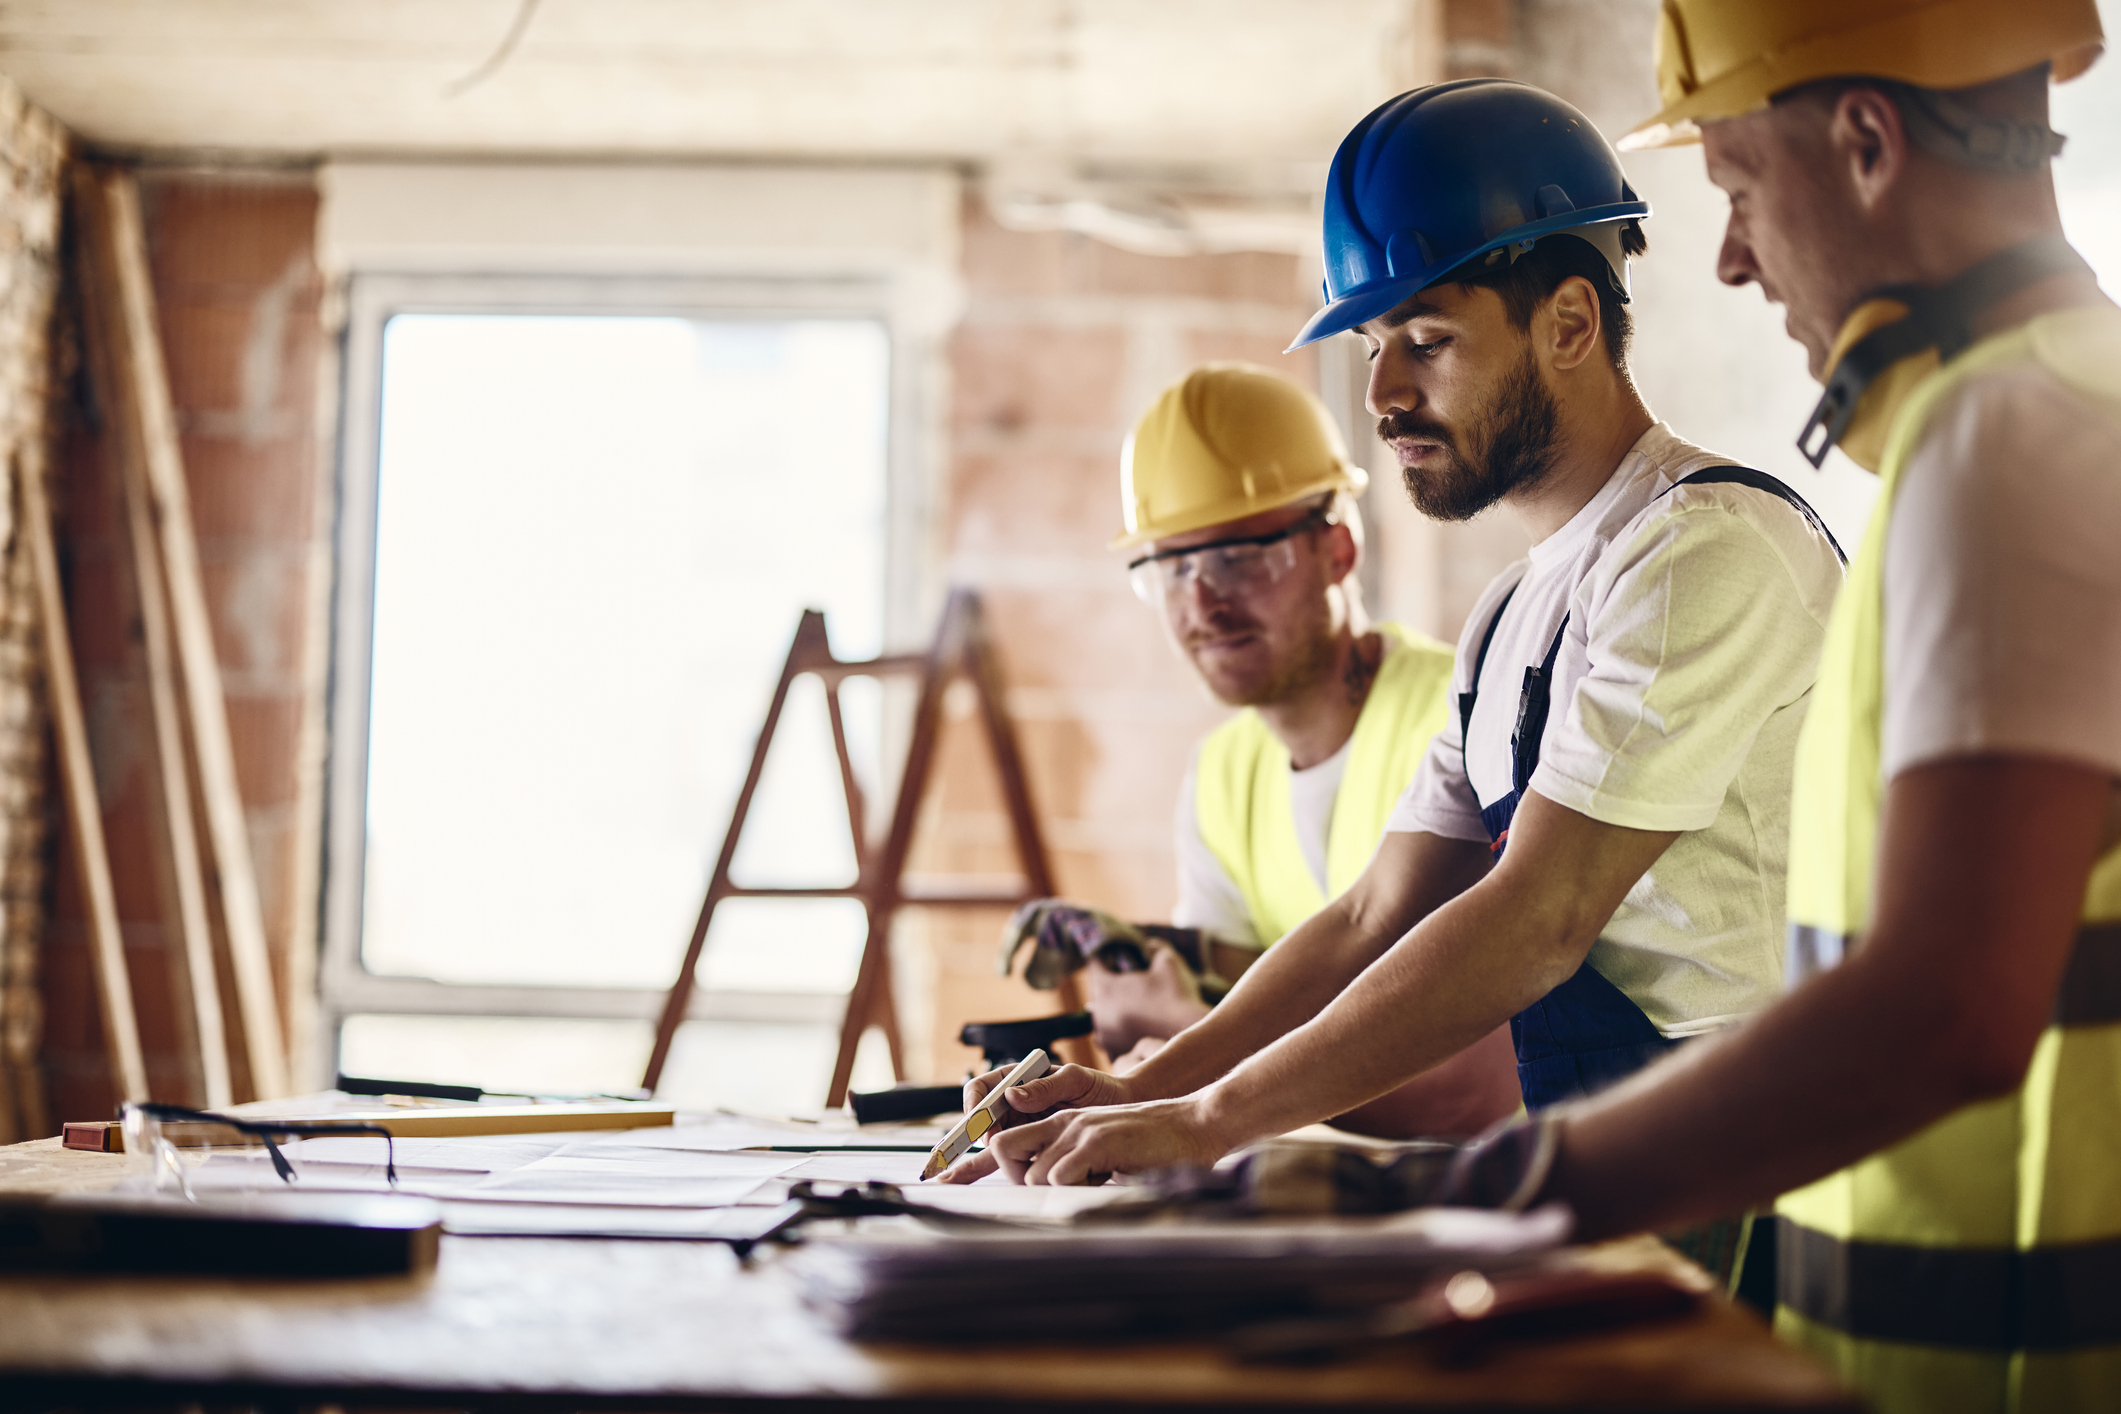 Public liability insurance for building contractors